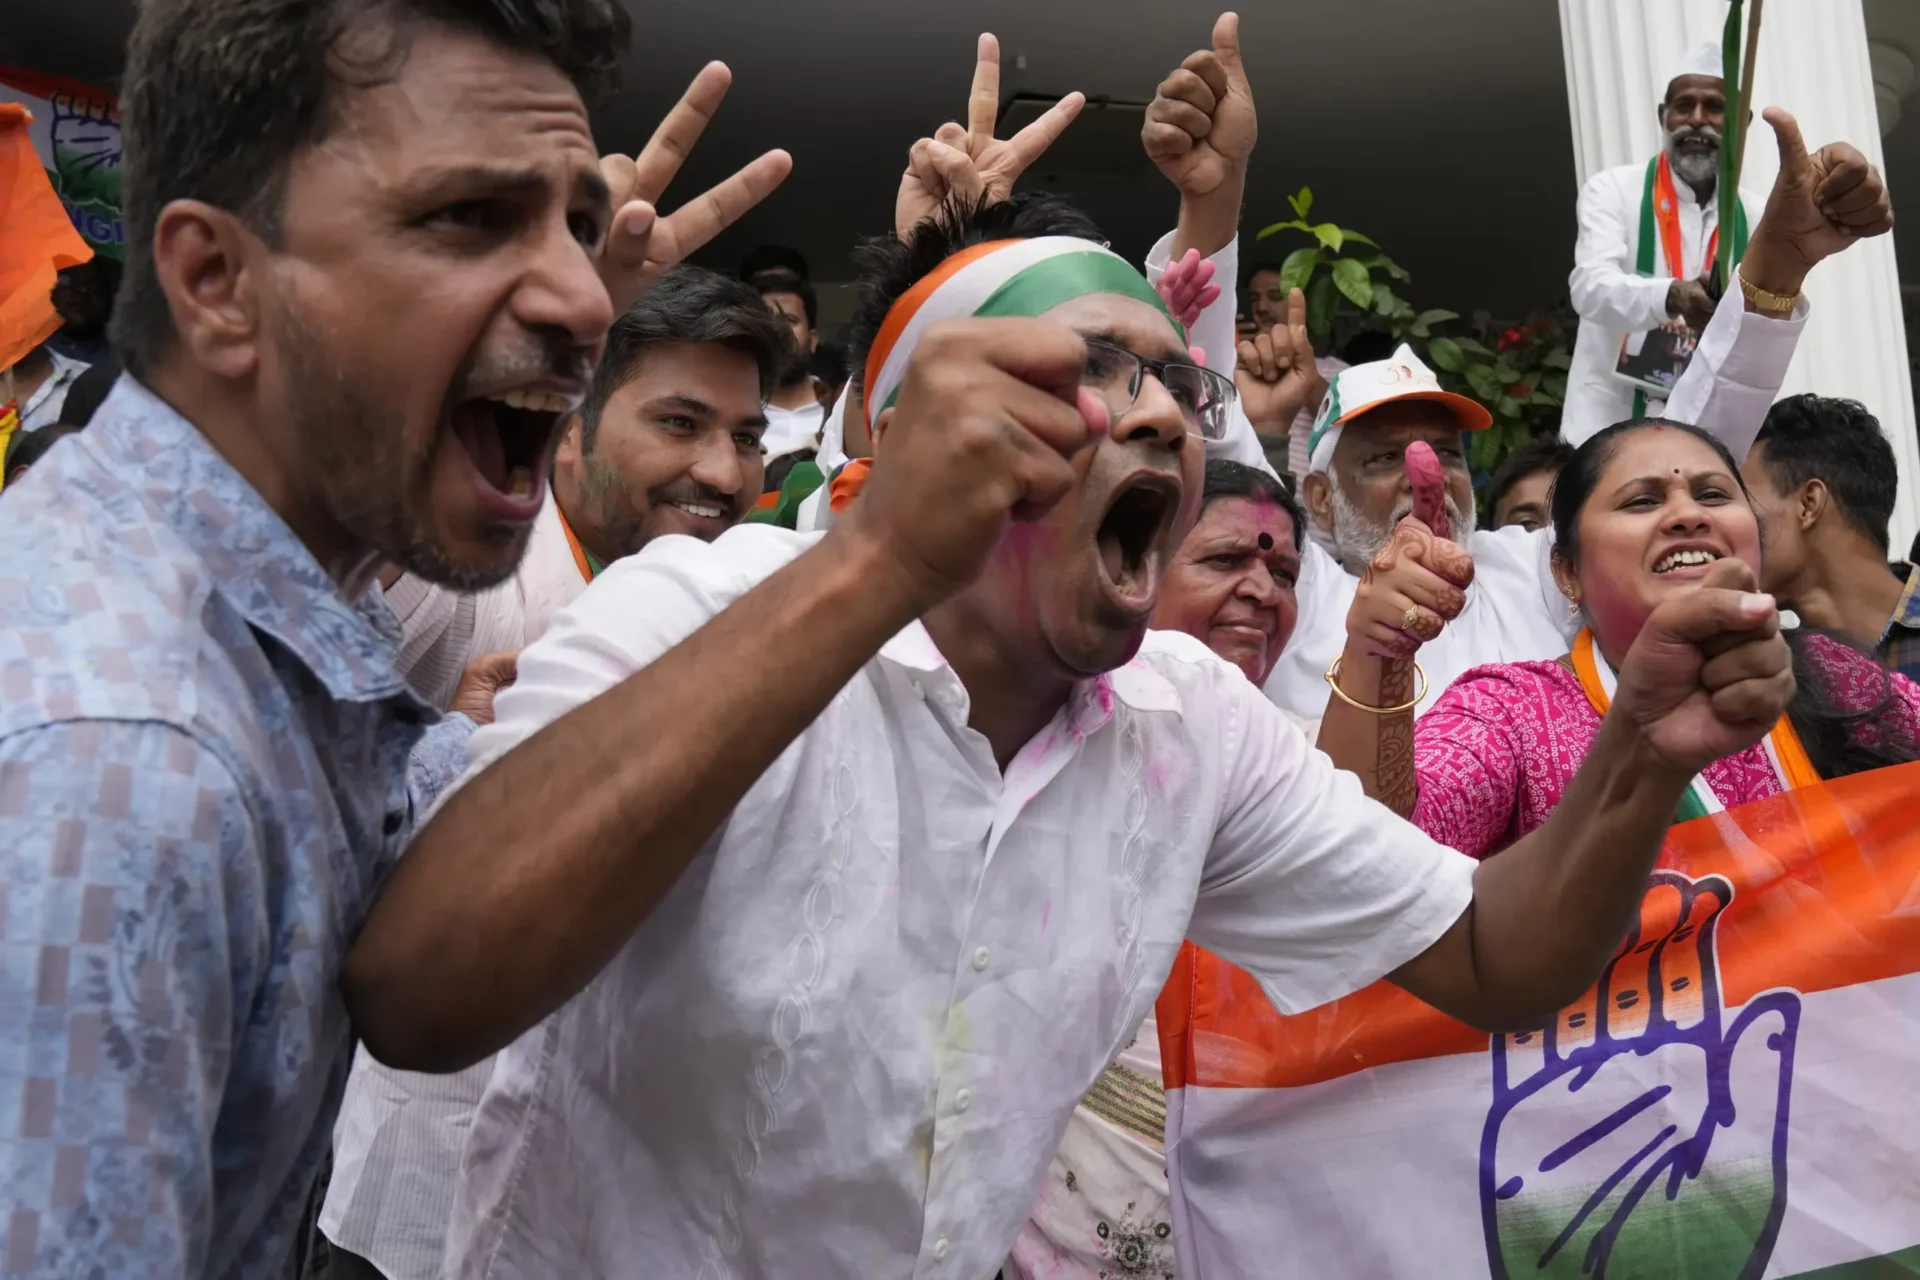 El partido nacionalista hindú de Modi pierde el estado indio de Karnataka en encuestas cruciales antes de la votación nacional